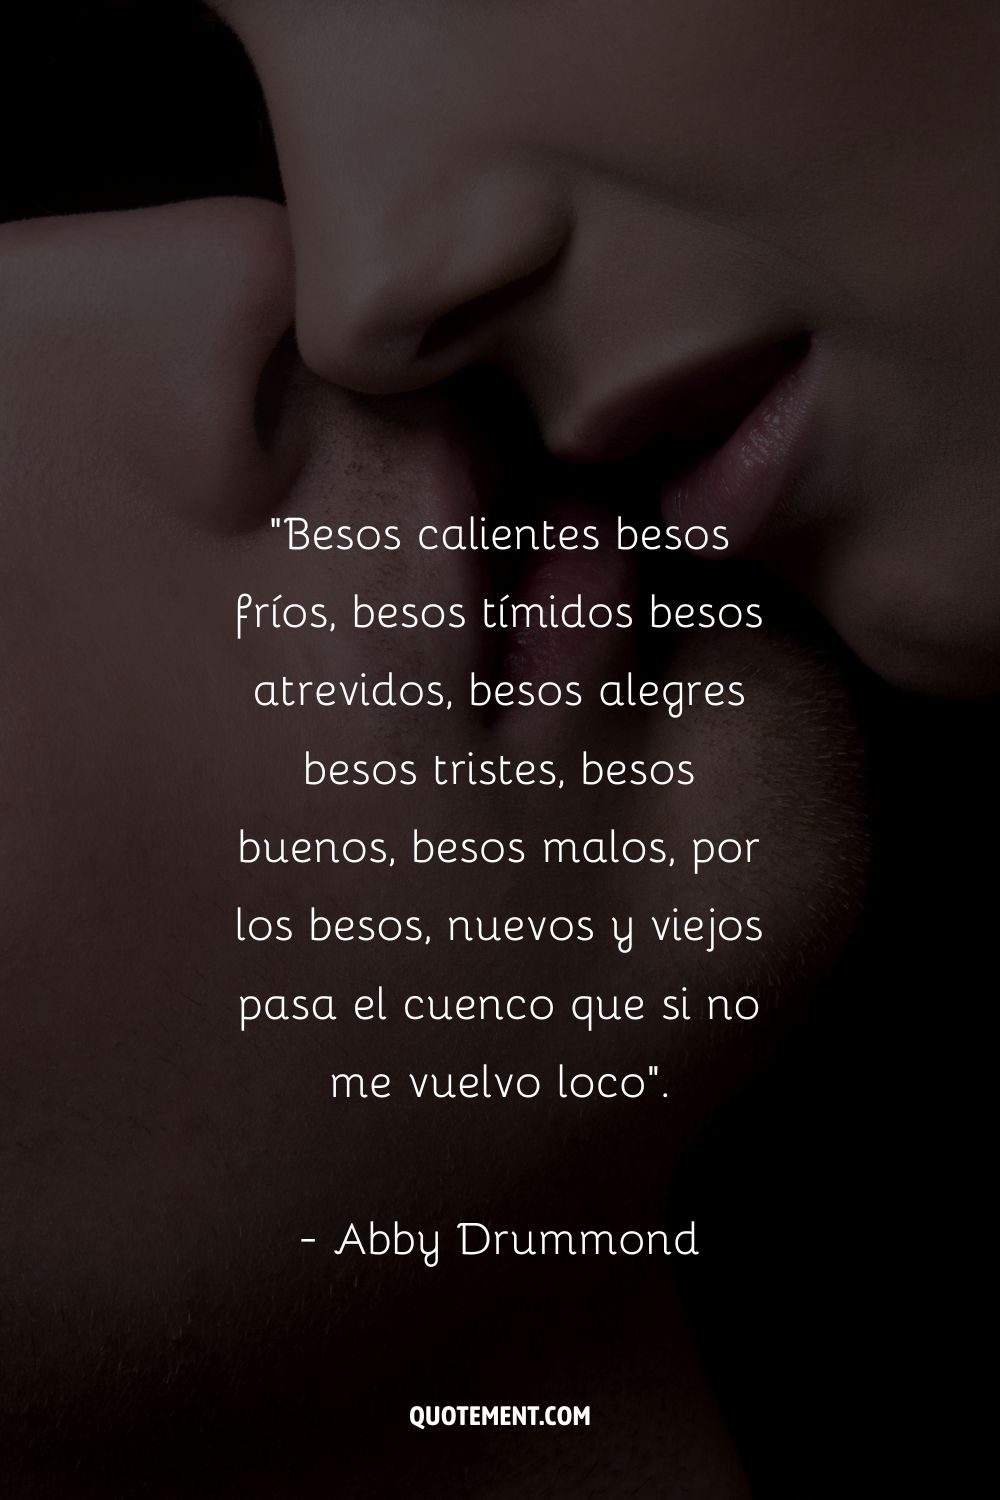 Besos calientes besos fríos, besos tímidos besos atrevidos, besos alegres besos tristes, besos buenos, besos malos, por los besos, nuevos y viejos pasa el cuenco que si no me vuelvo loca. - Abby Drummond